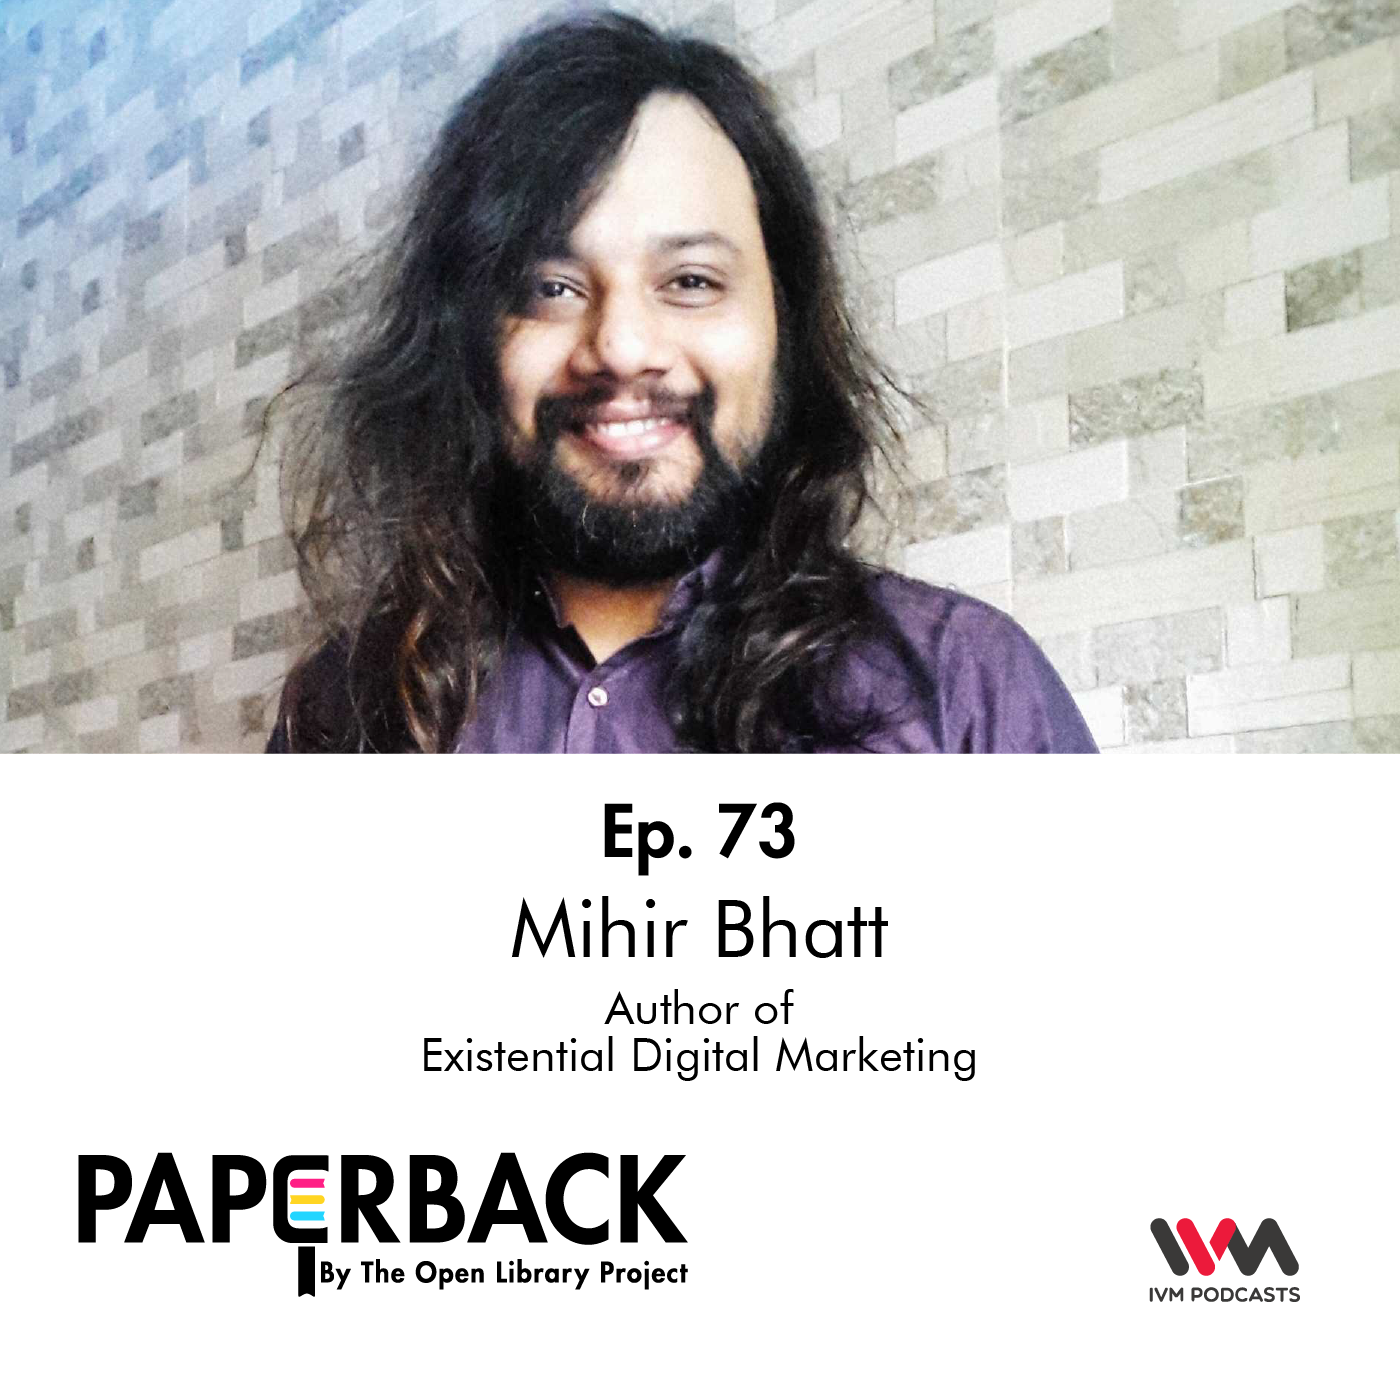 Ep. 73: Mihir Bhatt